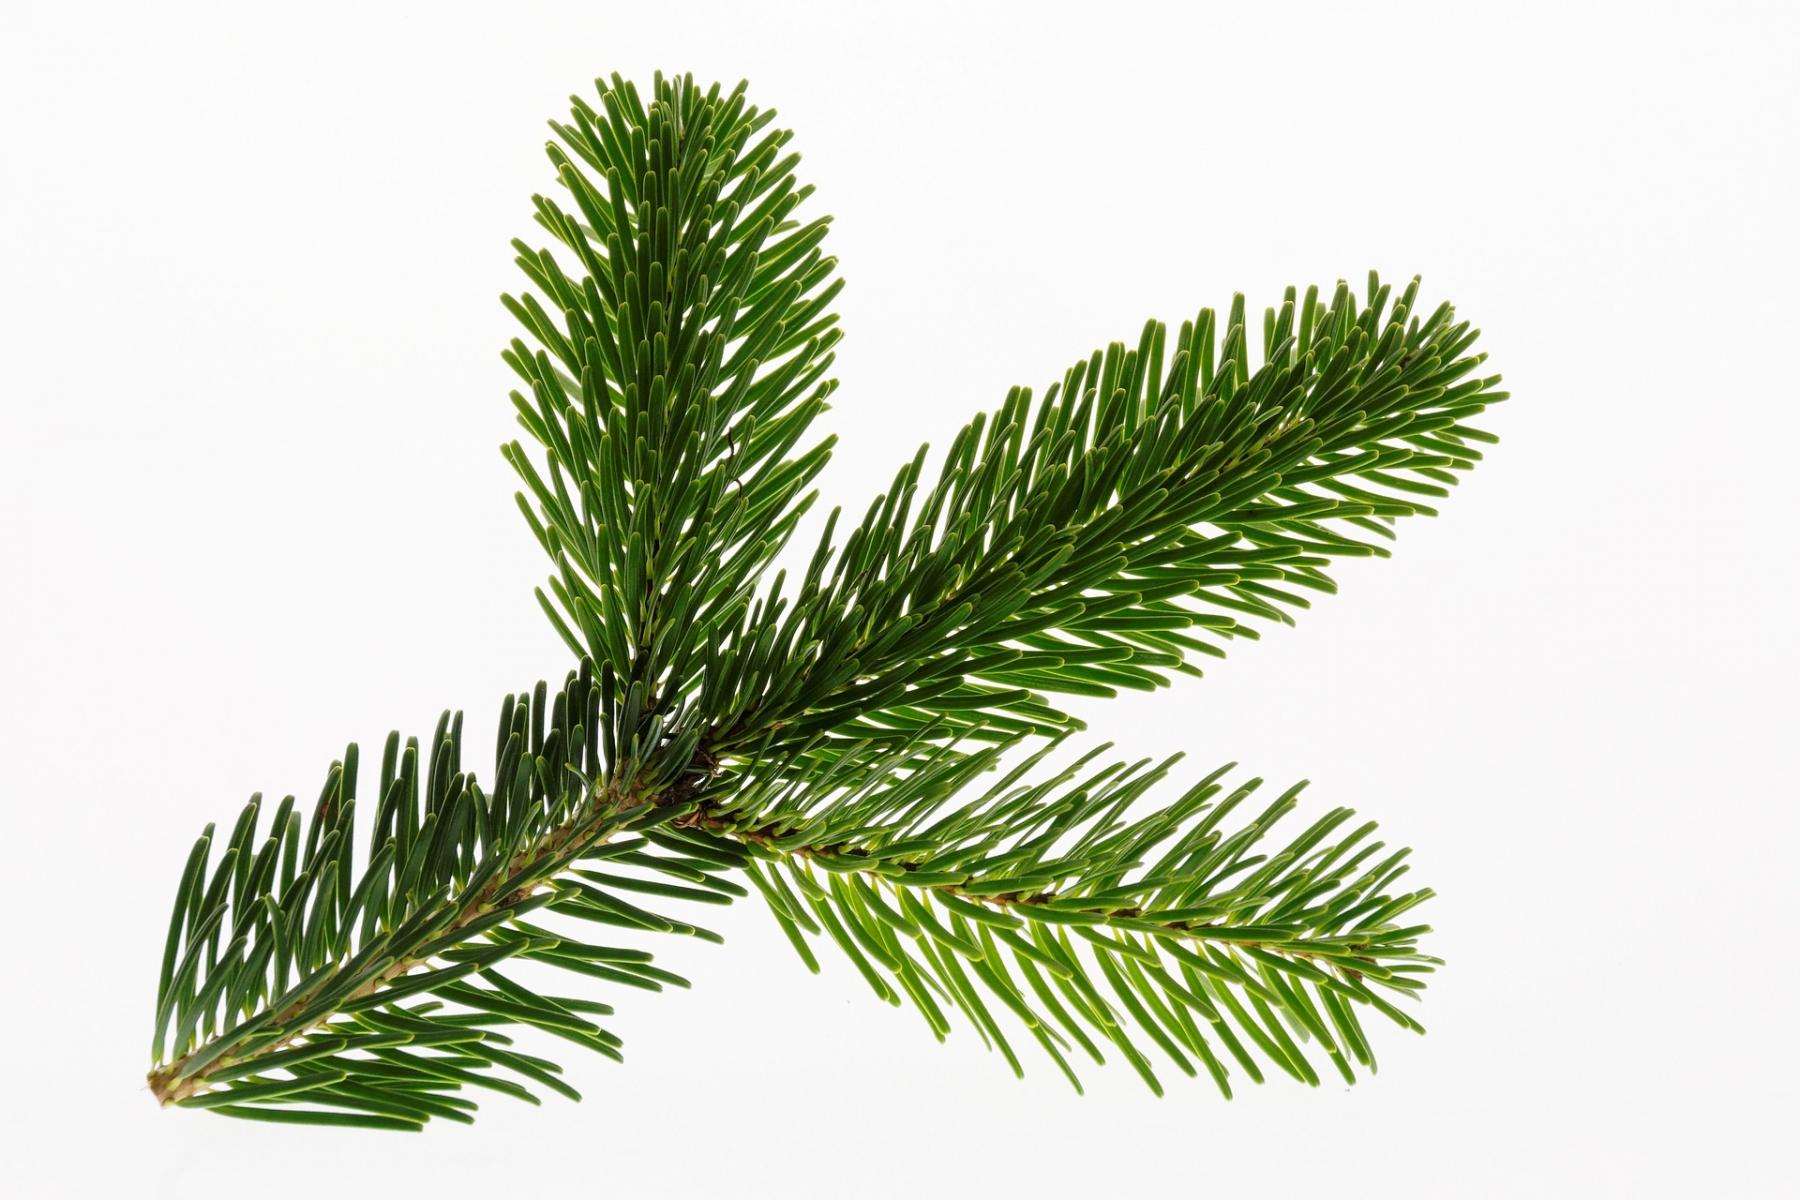 Image of fir needles. 